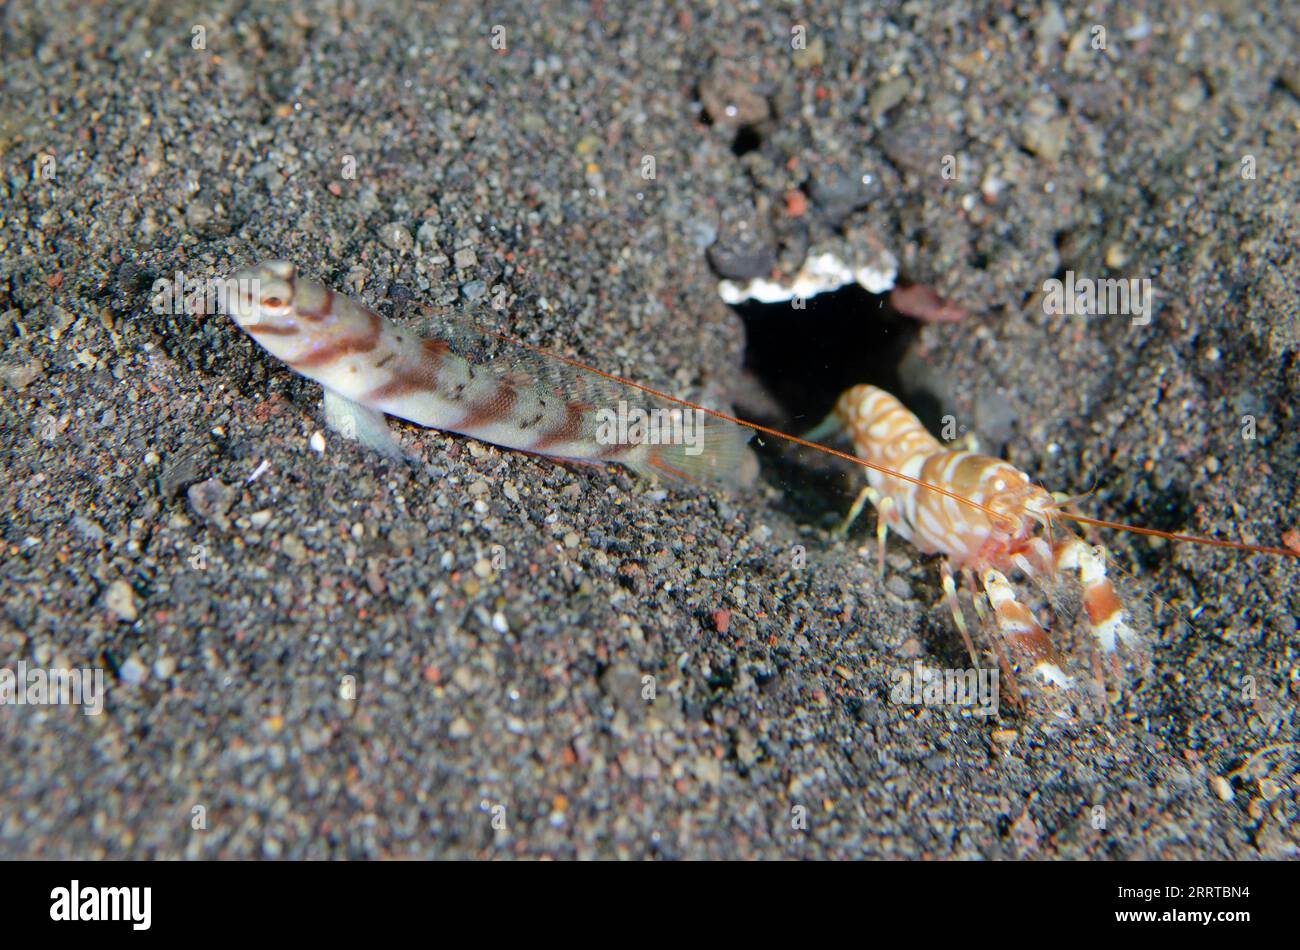 Slantbar Shrimpgoby, Amblyeleotris diagonalis, with Tiger Snapping Shrimp, Alpheus bellulus, Melasti dive site, Amed, Karangasem Regency, Bali, Indone Stock Photo